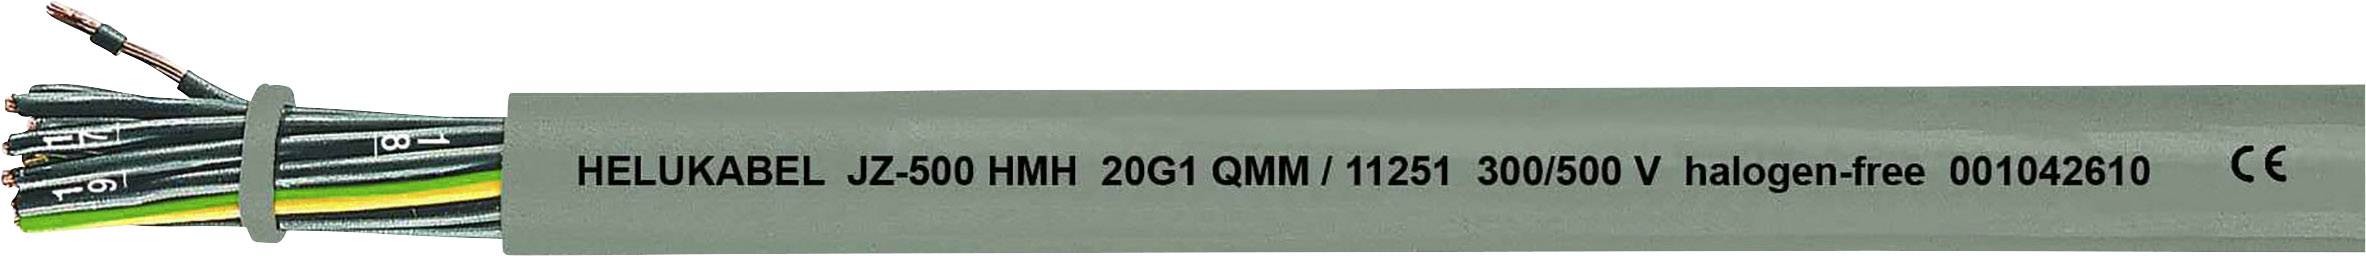 HELUKABEL JZ-500 HMH Steuerleitung 4 G 0.75 mm² Grau 11223-500 500 m